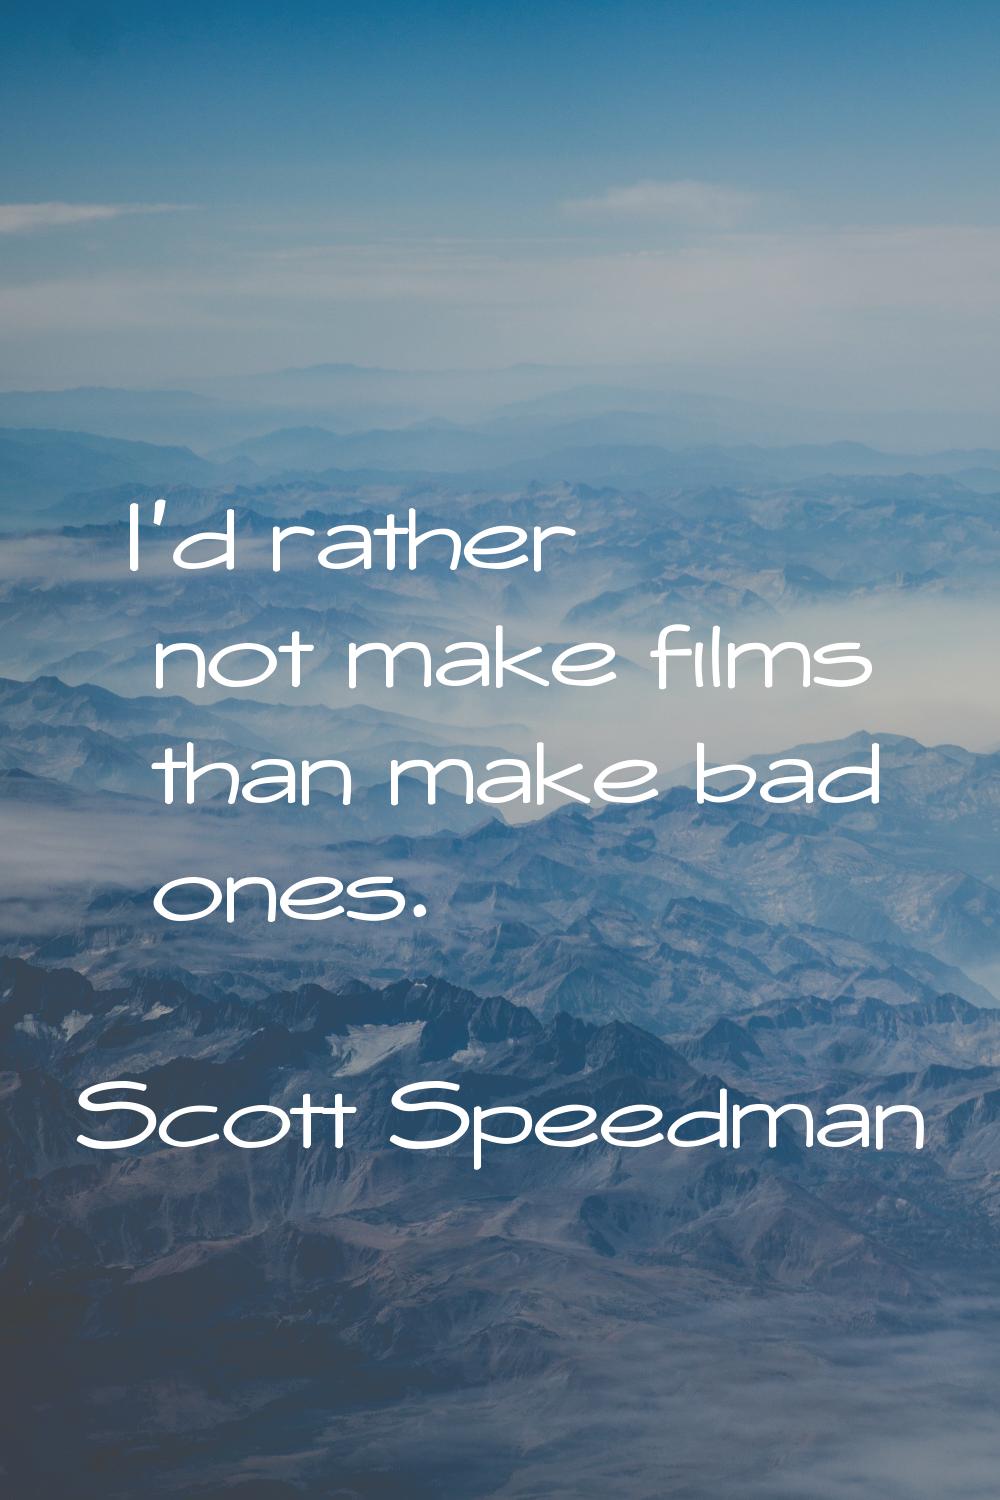 I'd rather not make films than make bad ones.